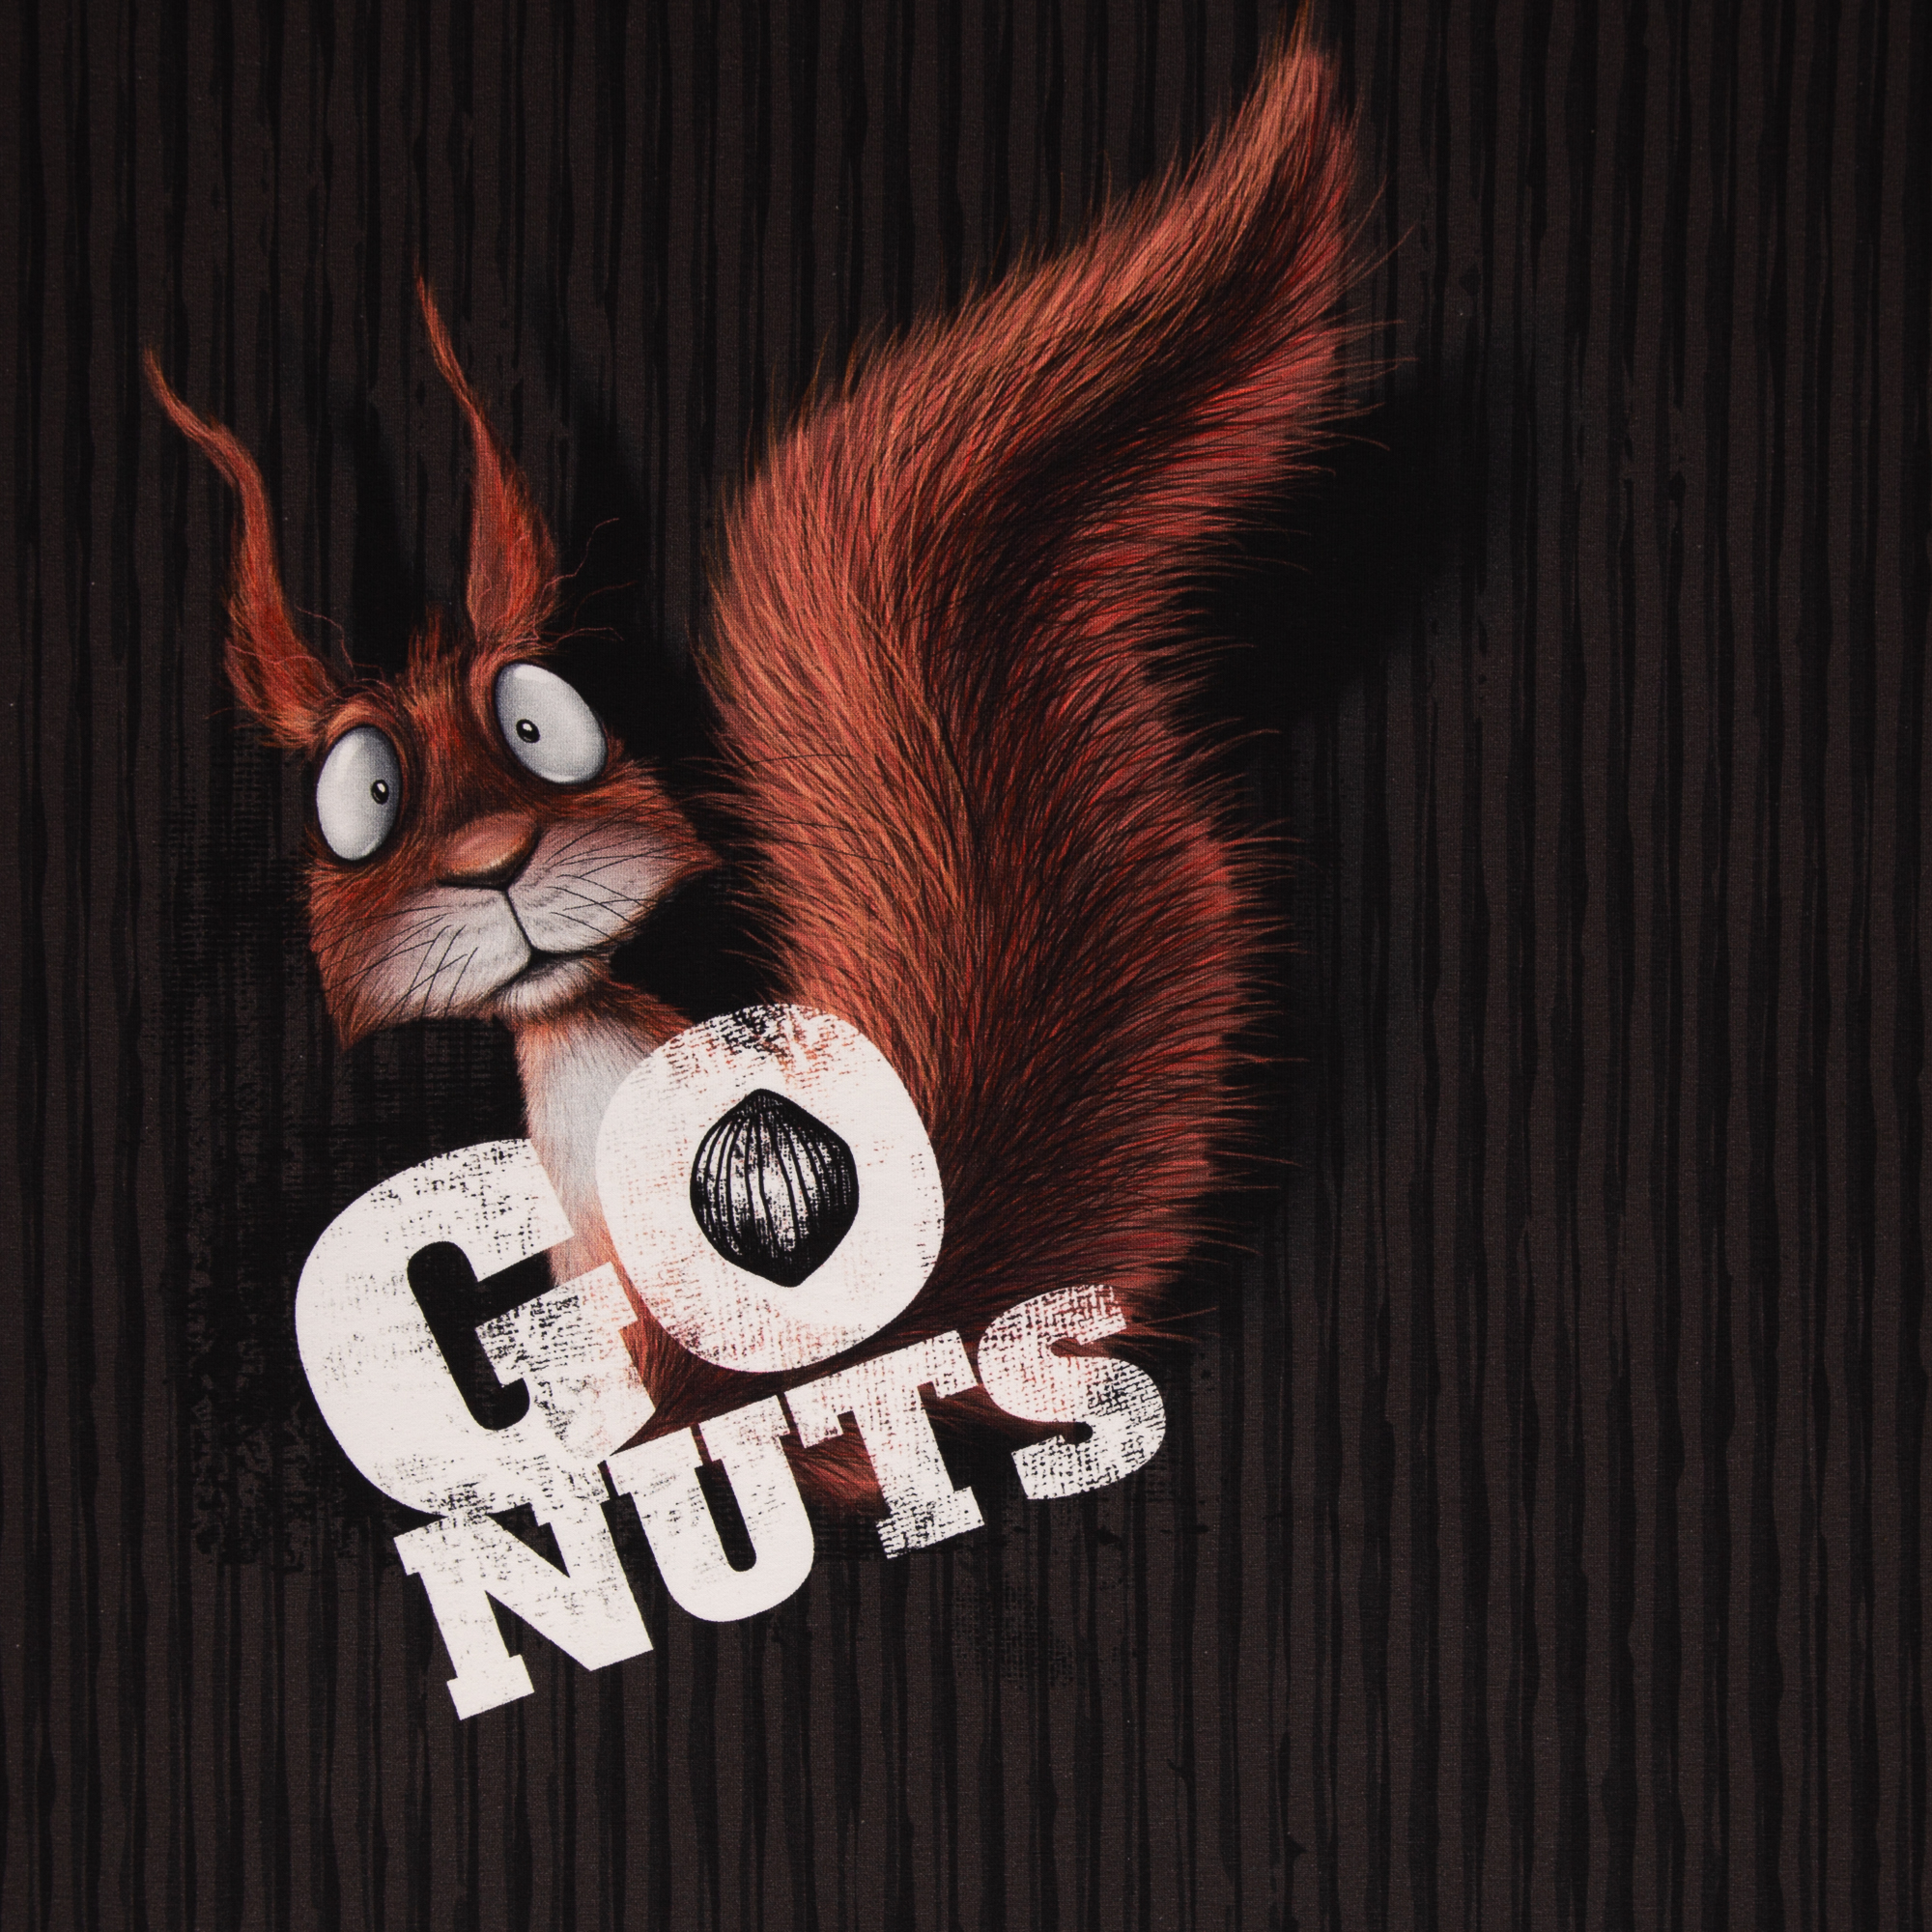 Go Nuts by Thorsten Berger French Terry Baumwolle Stoff Panel Eichhörnchen Streifen 85x155cm